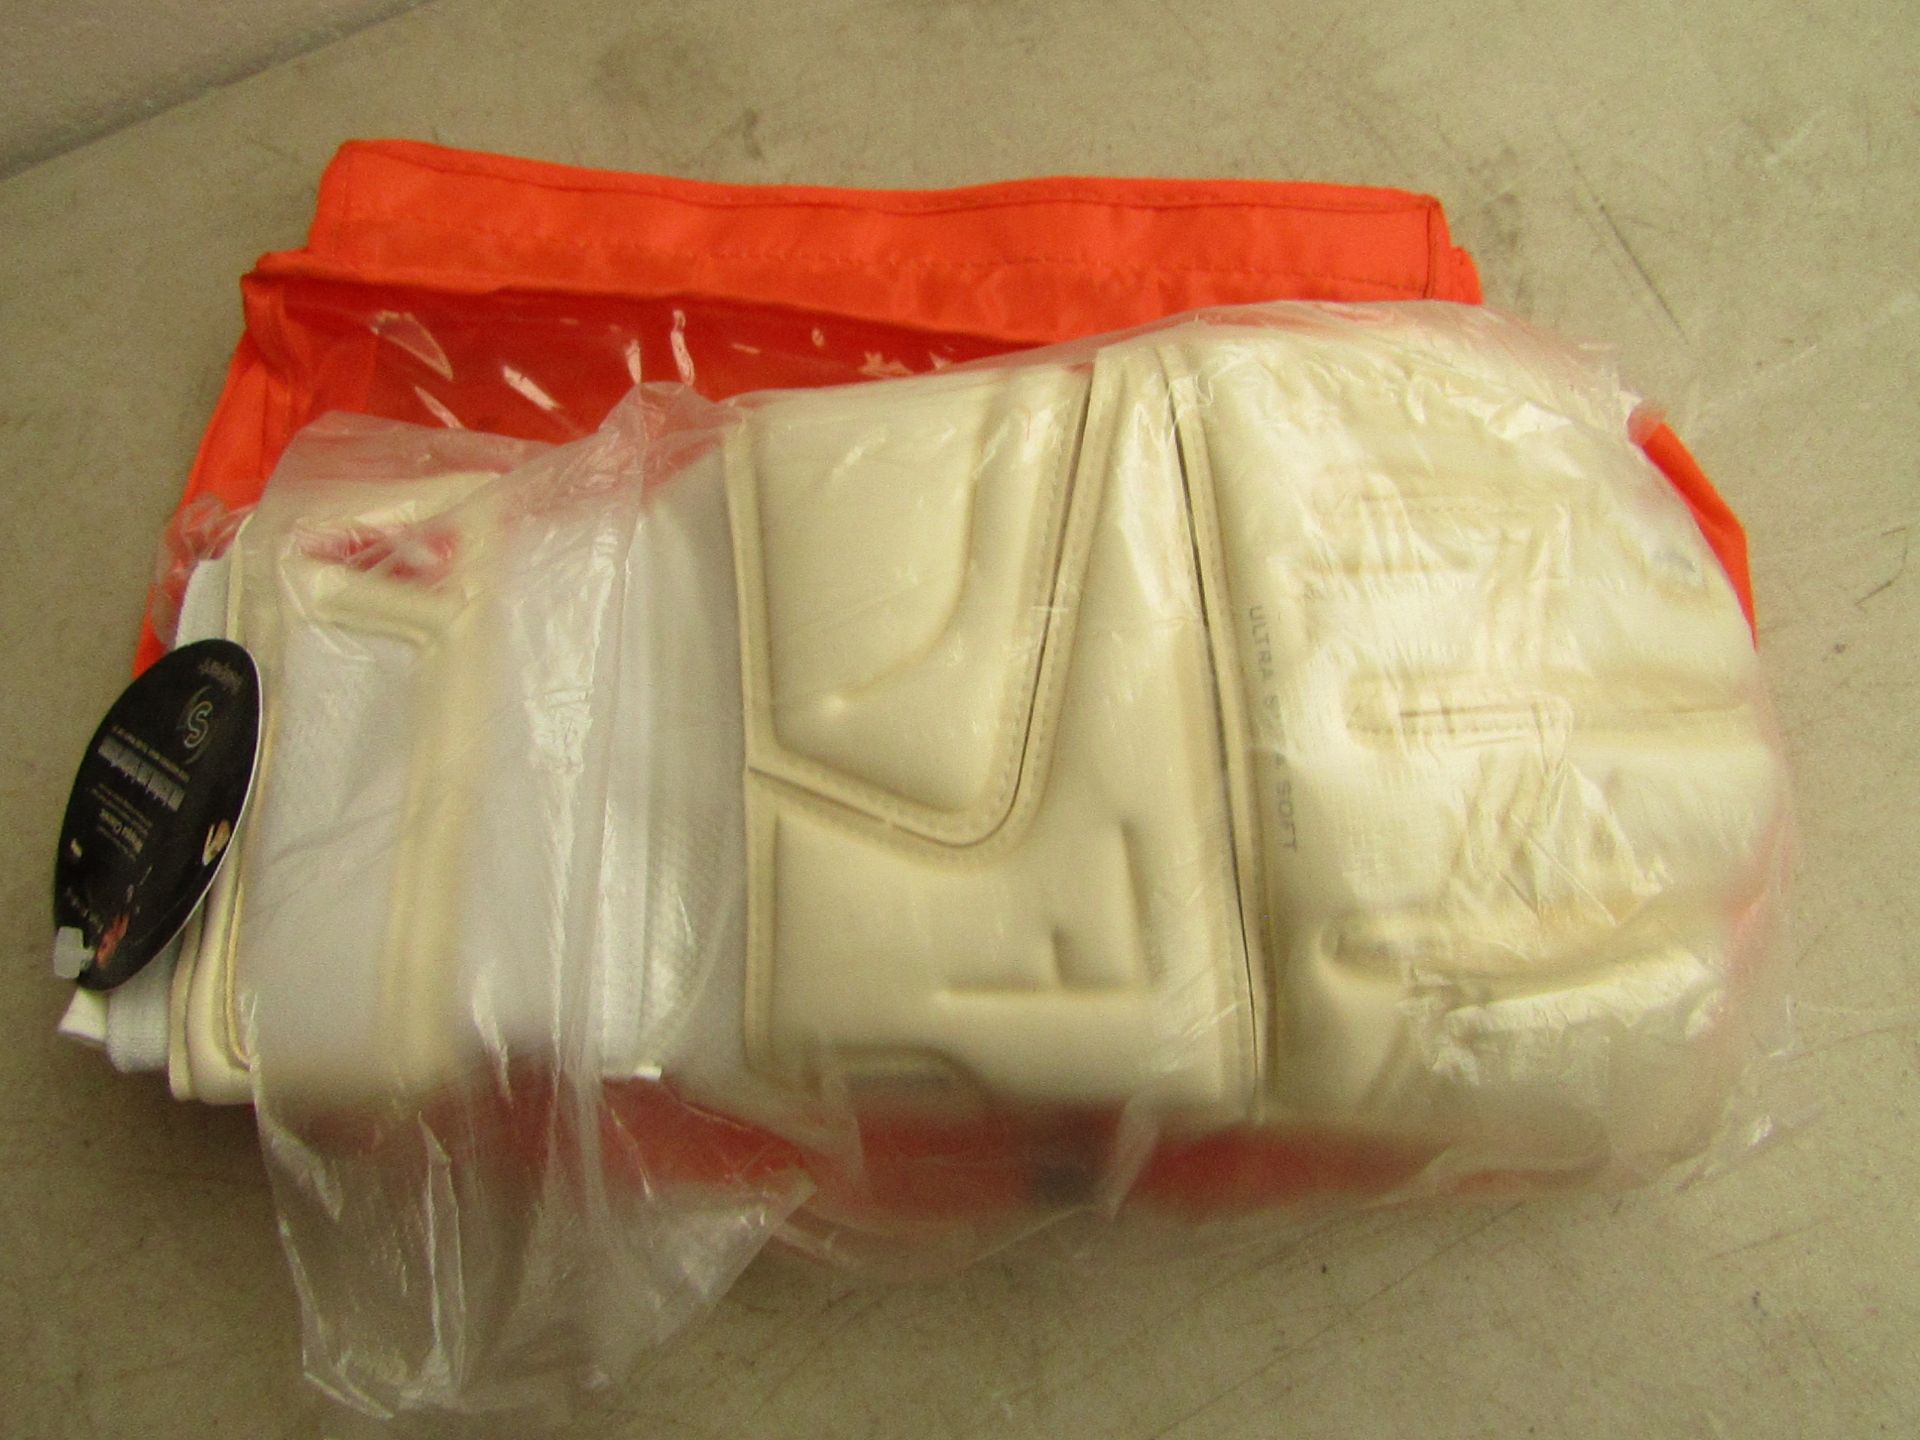 Selspert goalkeeper gloves, full white coloured, super soft, new with carry bag.